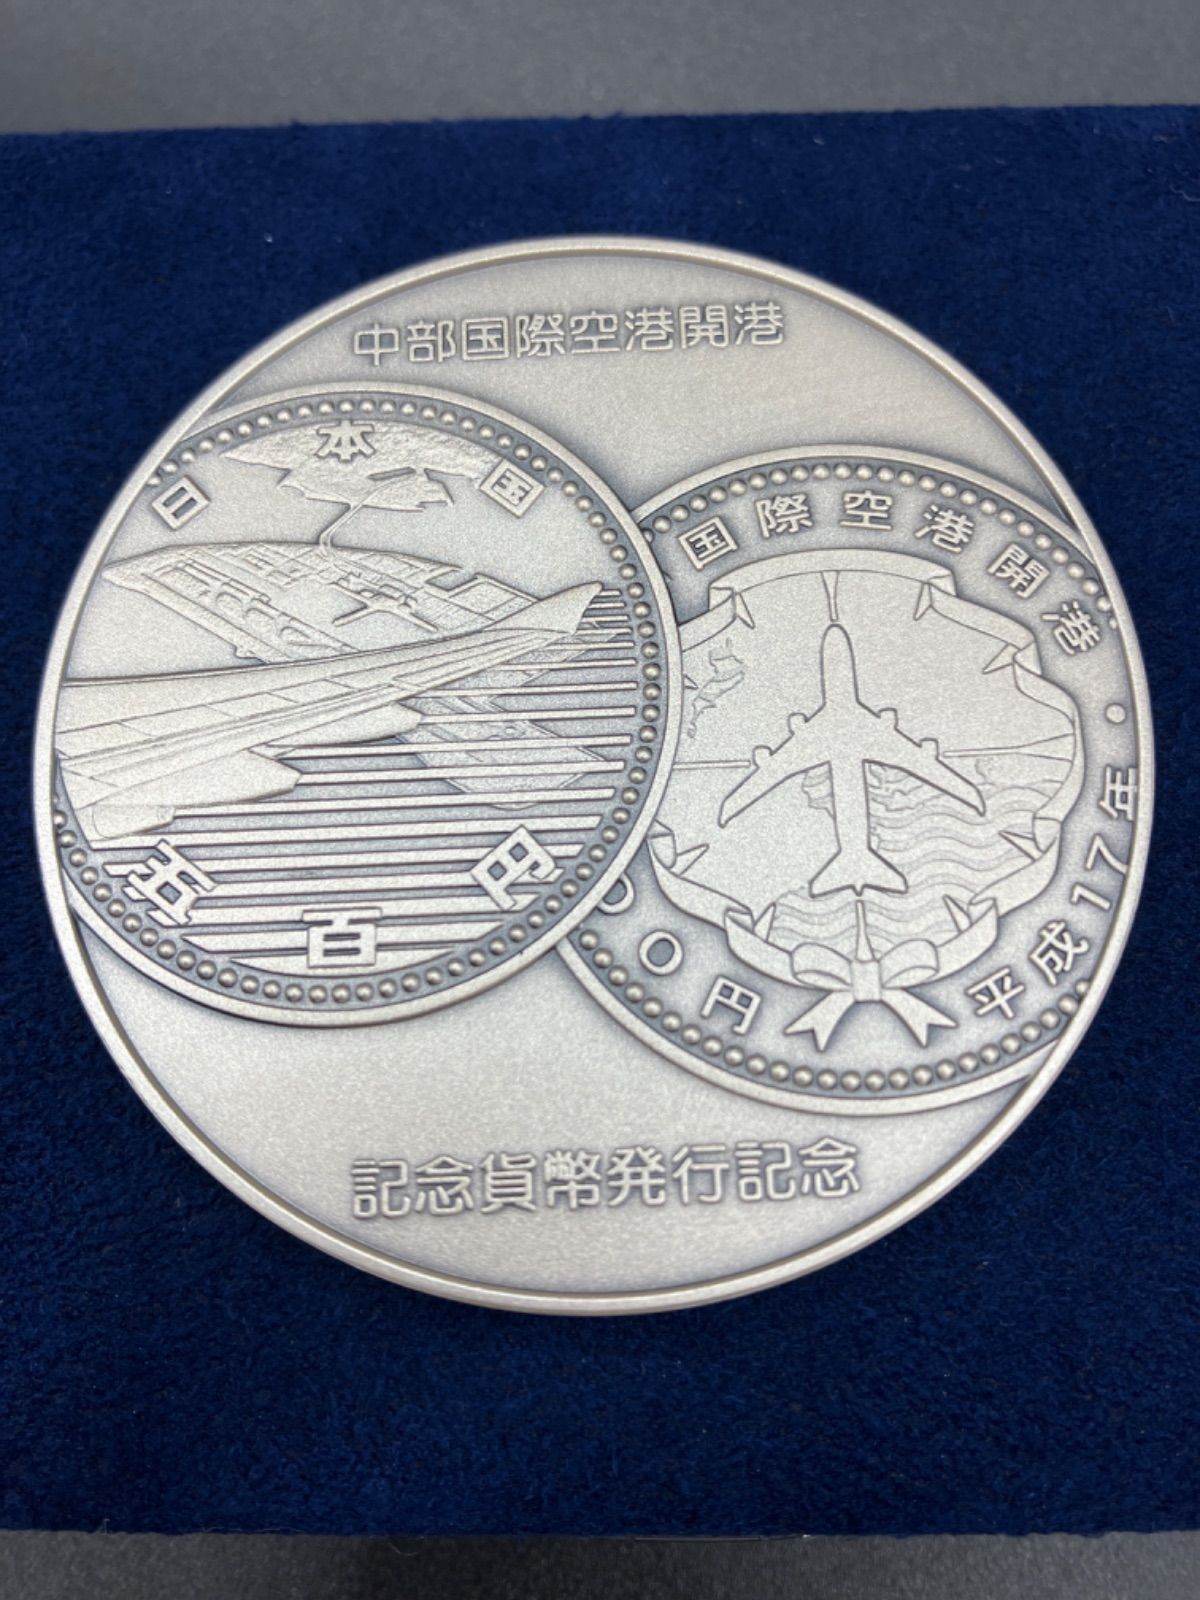 関西国際空港開港記念貨幣発行記念メダル - 旧貨幣/金貨/銀貨/記念硬貨